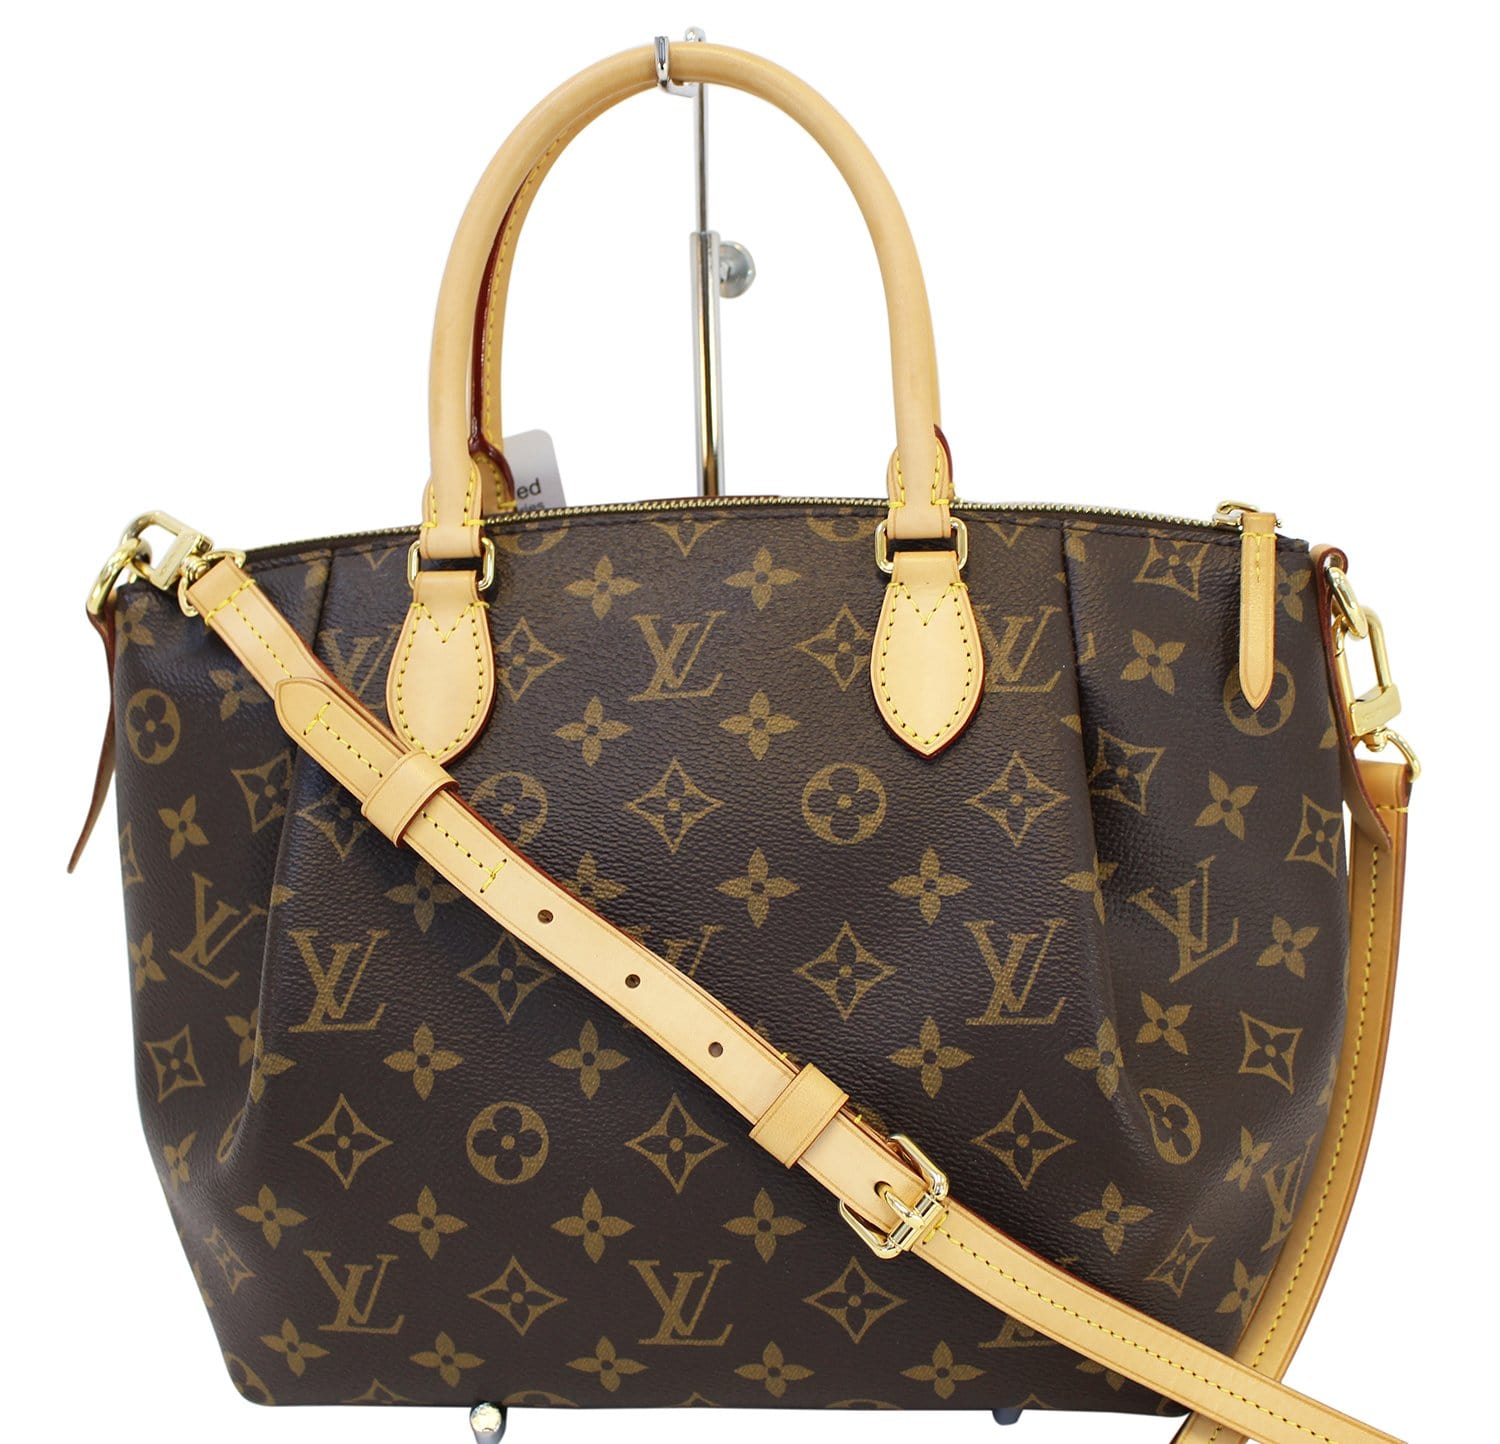 L-V Turenne Handbag with Sling